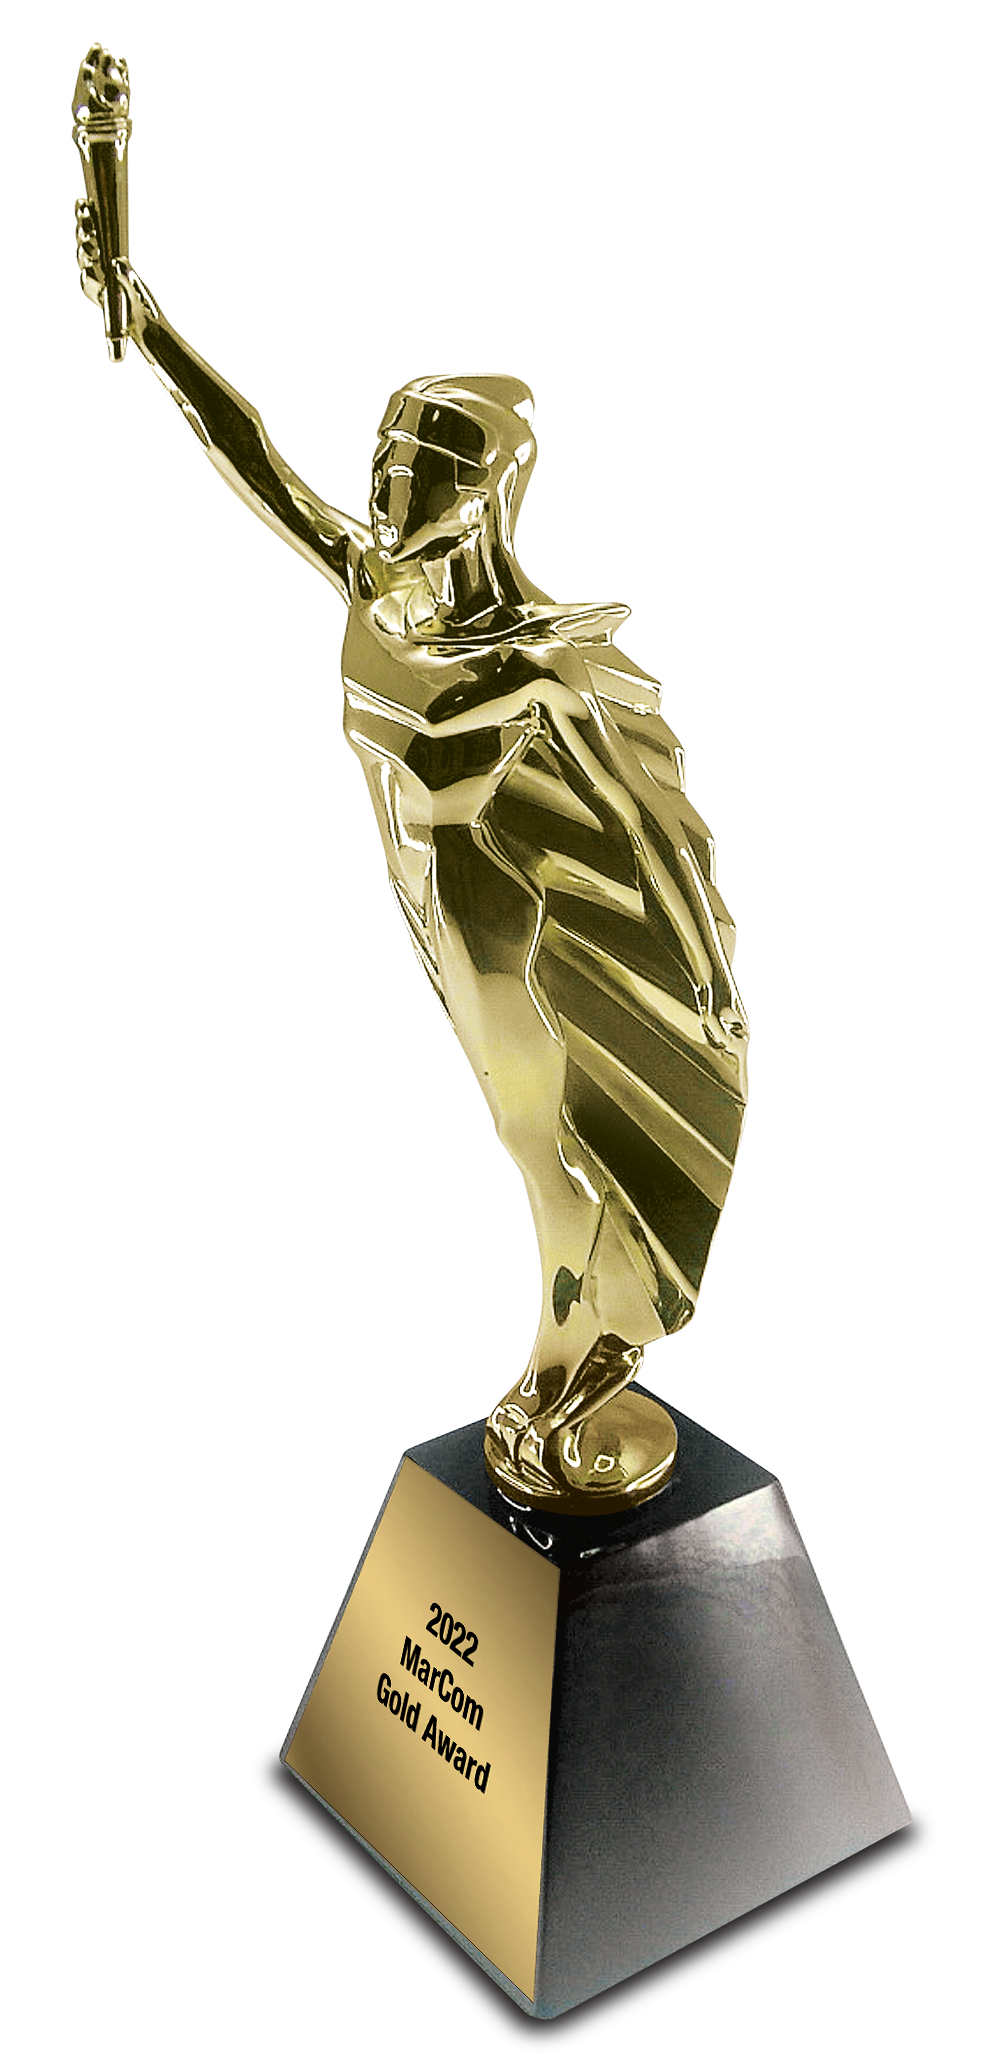 2011 MarCom Gold Award